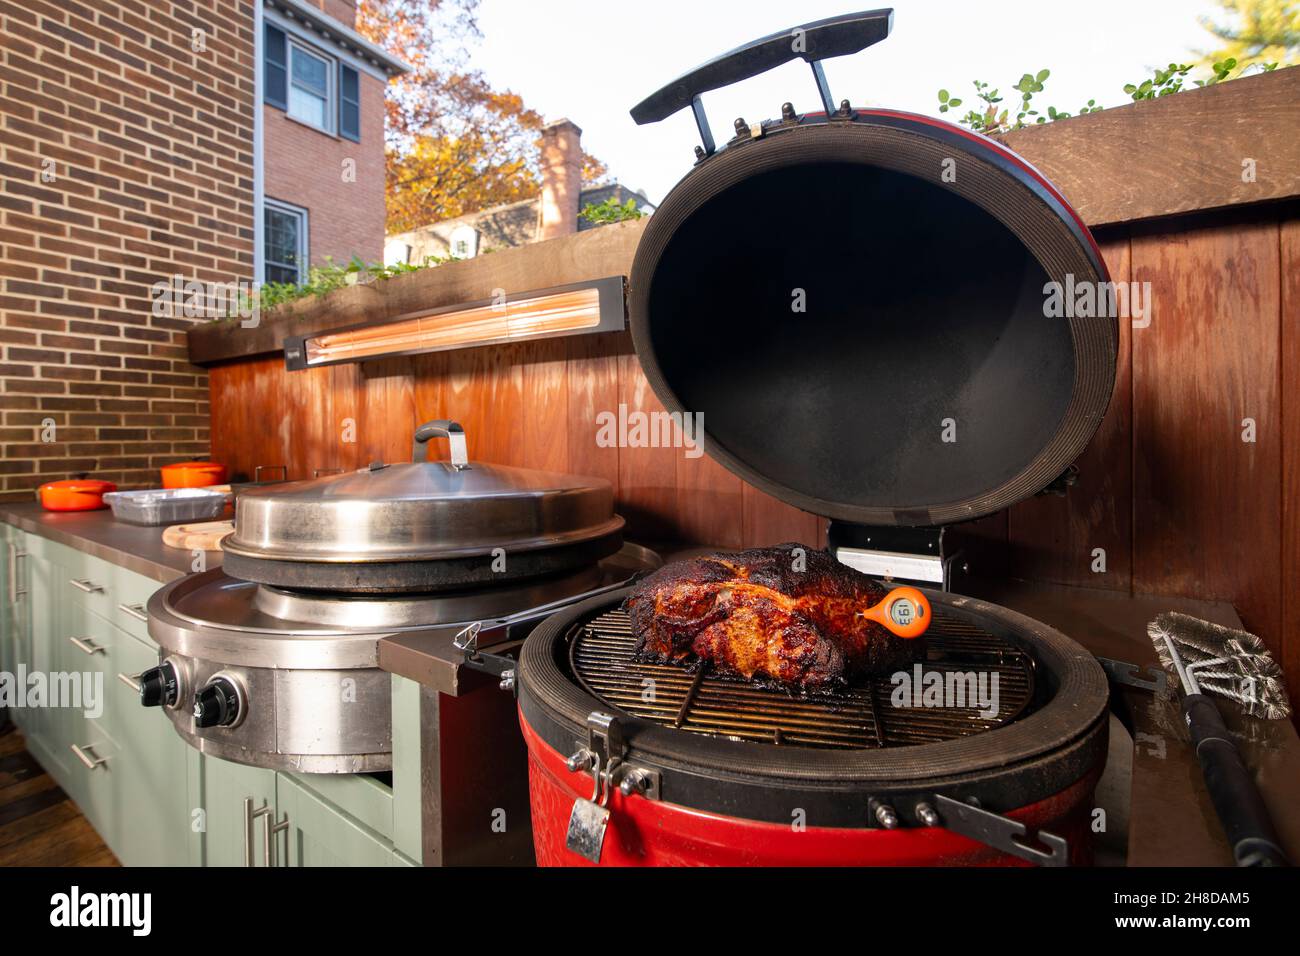 Cucina esterna fumatore e grill piano cottura di un culo di maiale o spalla utilizzando un termometro a carne per controllare la temperatura interna Foto Stock